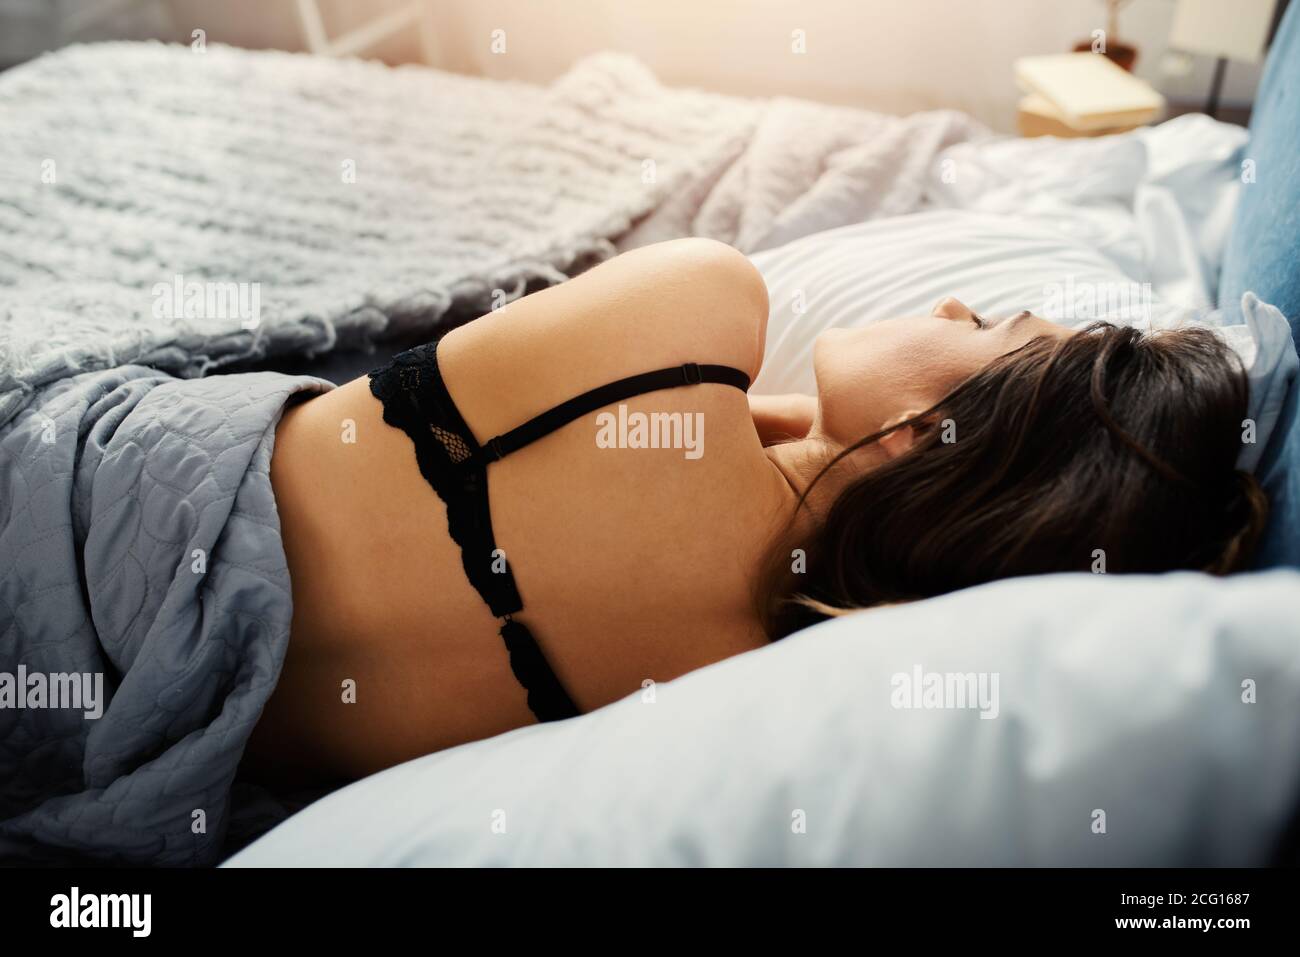 La ragazza dorme in un letto accogliente durante la notte. Concetto di relax e riposo. Foto Stock